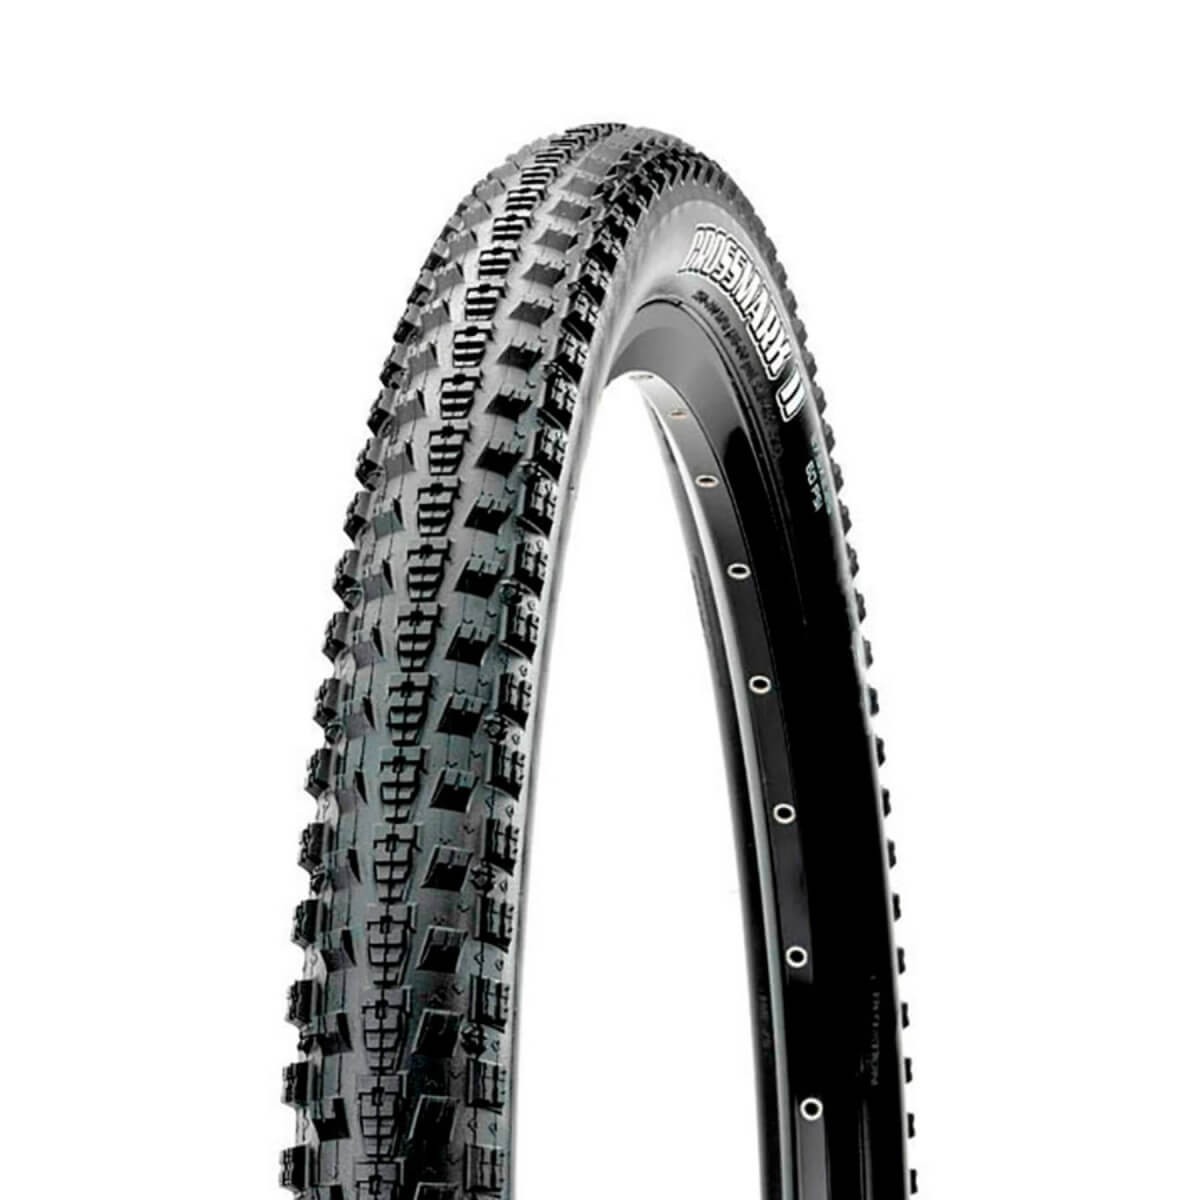 Maxxis Crossmark II 29 x 2.25 folding black tire